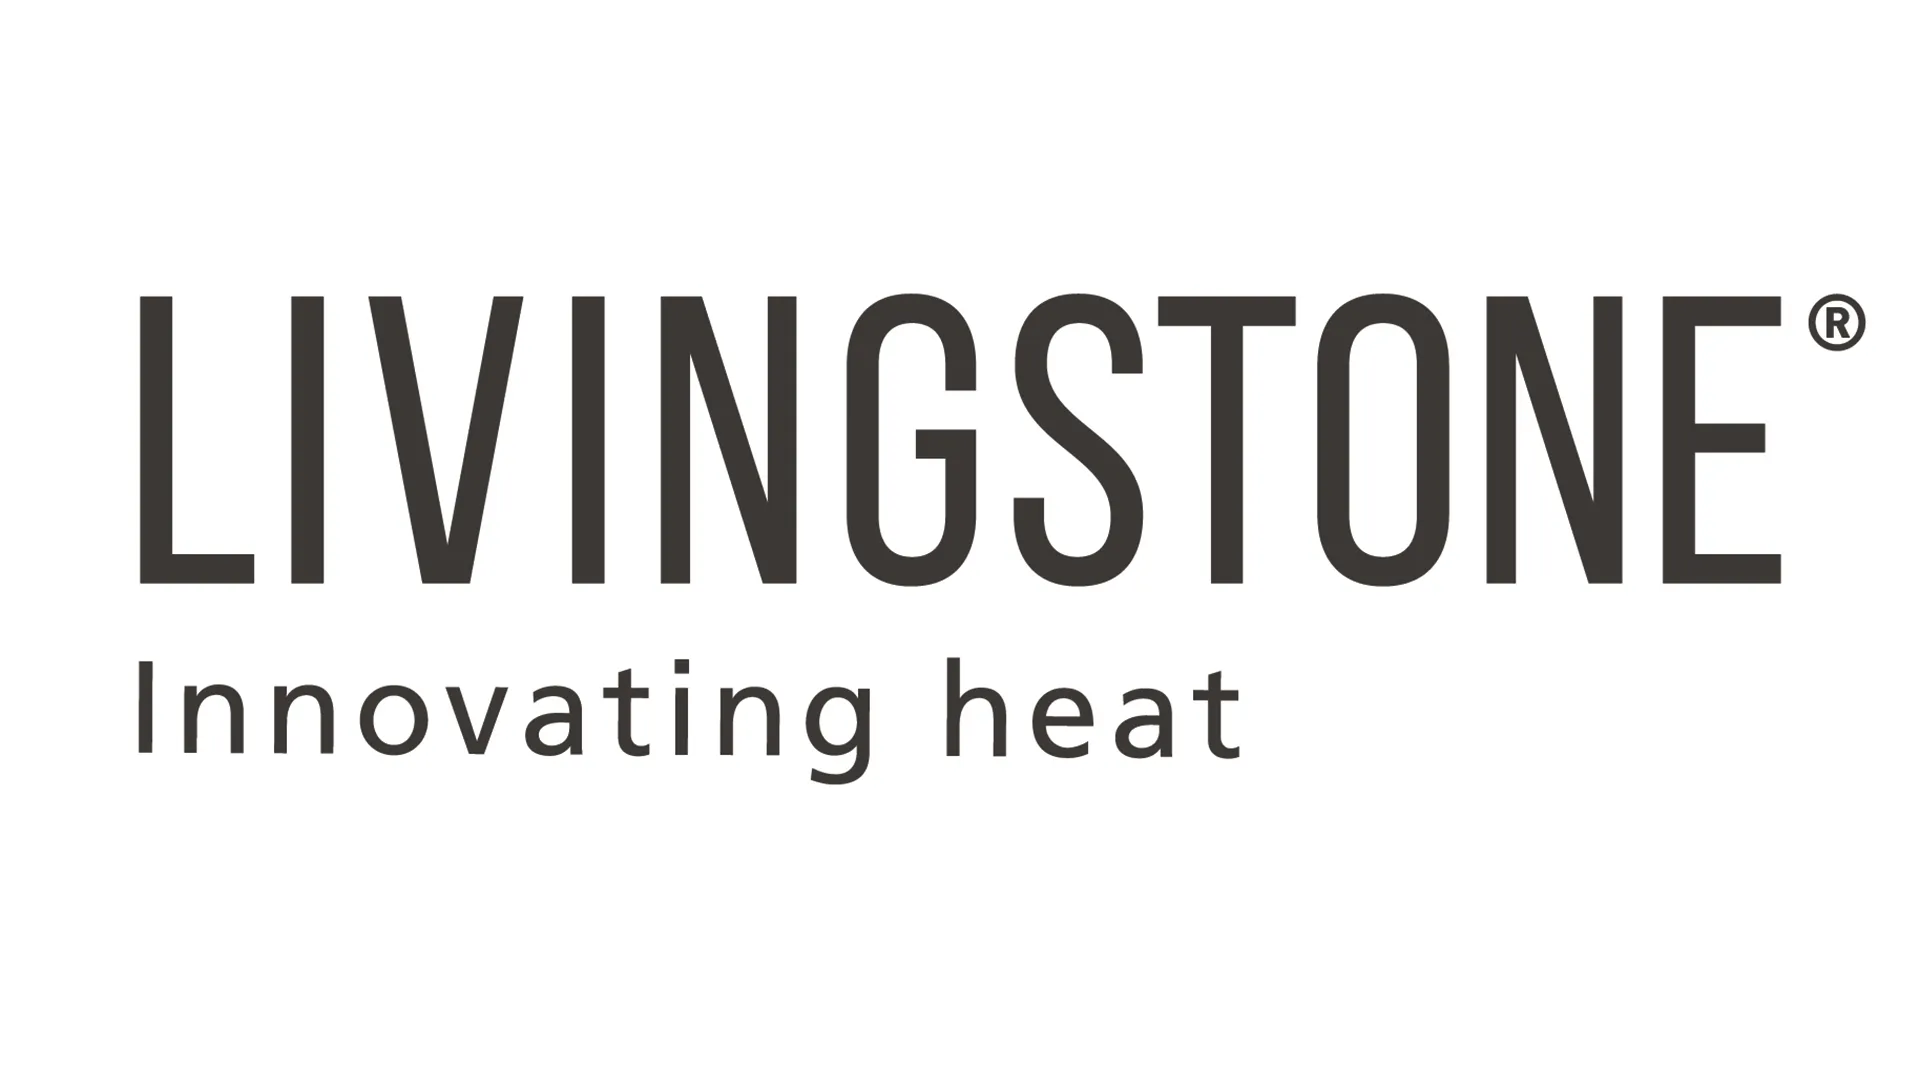 Livingstone®, calore innovativo